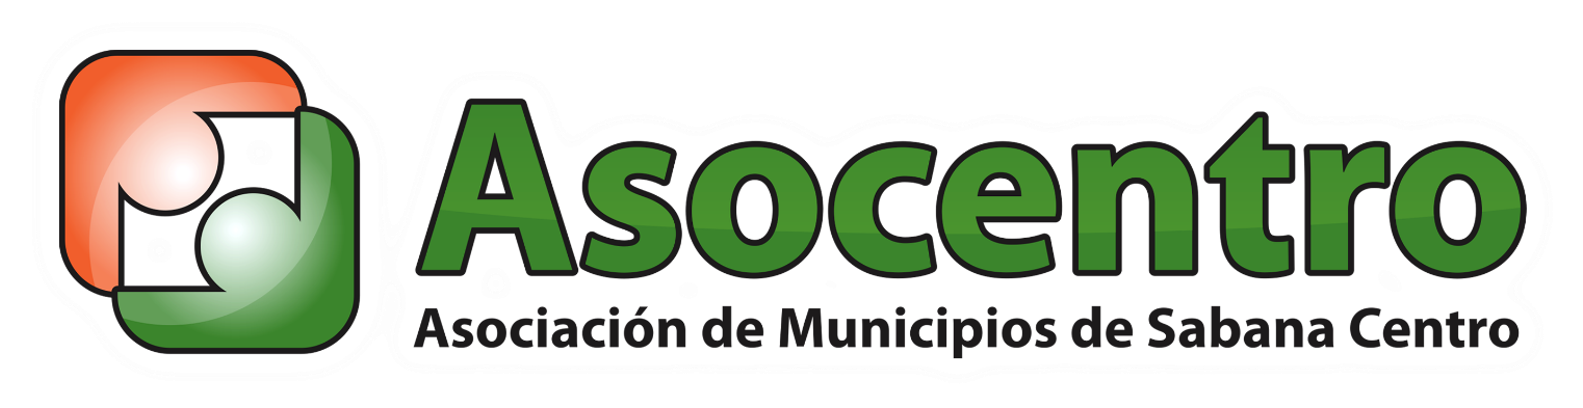 Imagen: Asociación de Municipios de Sabana Centro - ASOCENTRO